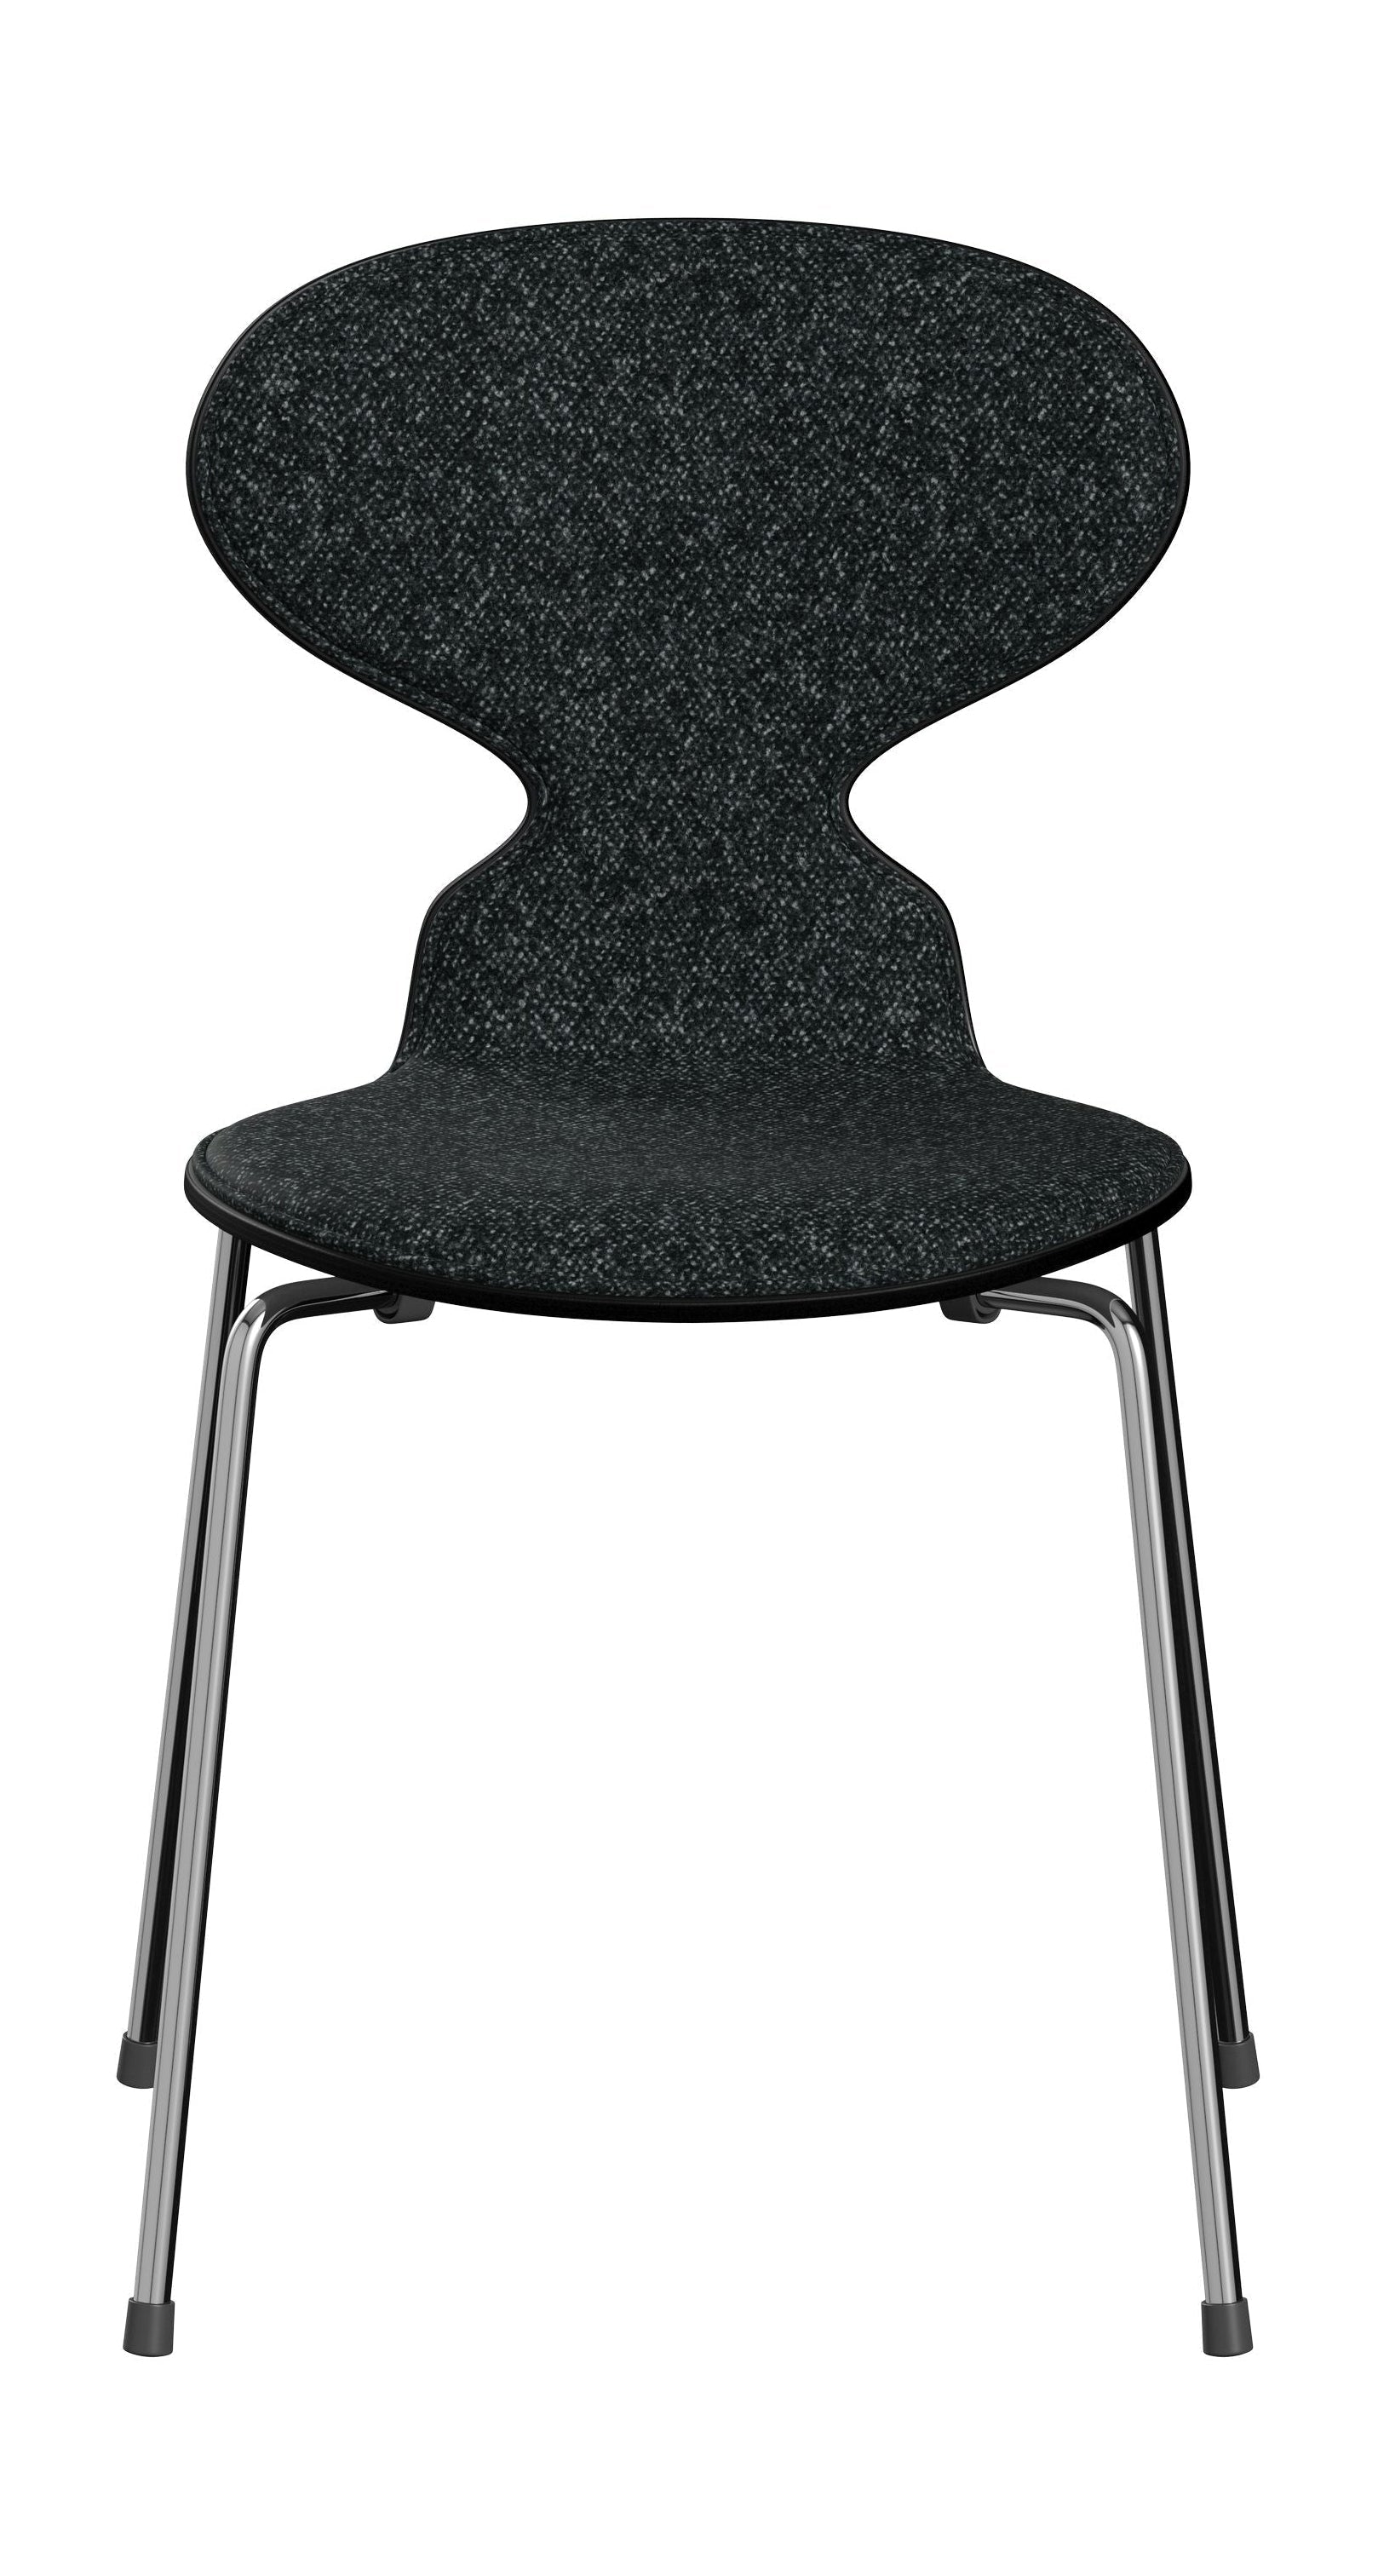 Fritz Hansen 3101 Ant stol foran polstret, skall: farget finér svart, møbeltrekk: vanir tekstil svart/grå, base: stål/krom